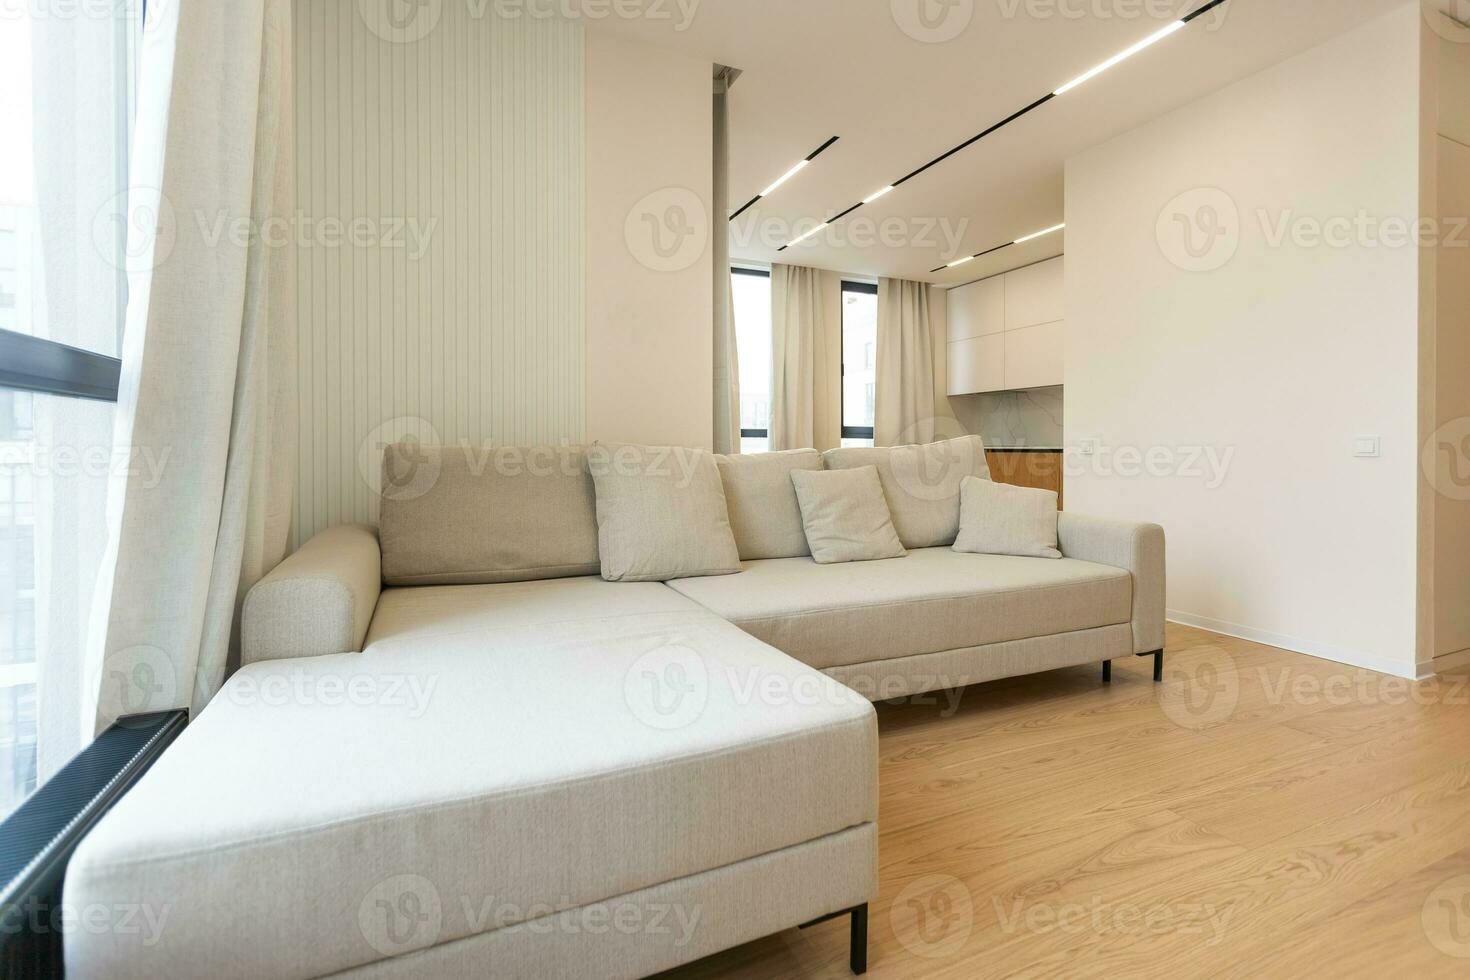 helder leven kamer interieur met groot sofa en eik houten vloer. concept van minimalistische ontwerp. comfortabel plaats voor ontmoeting. foto